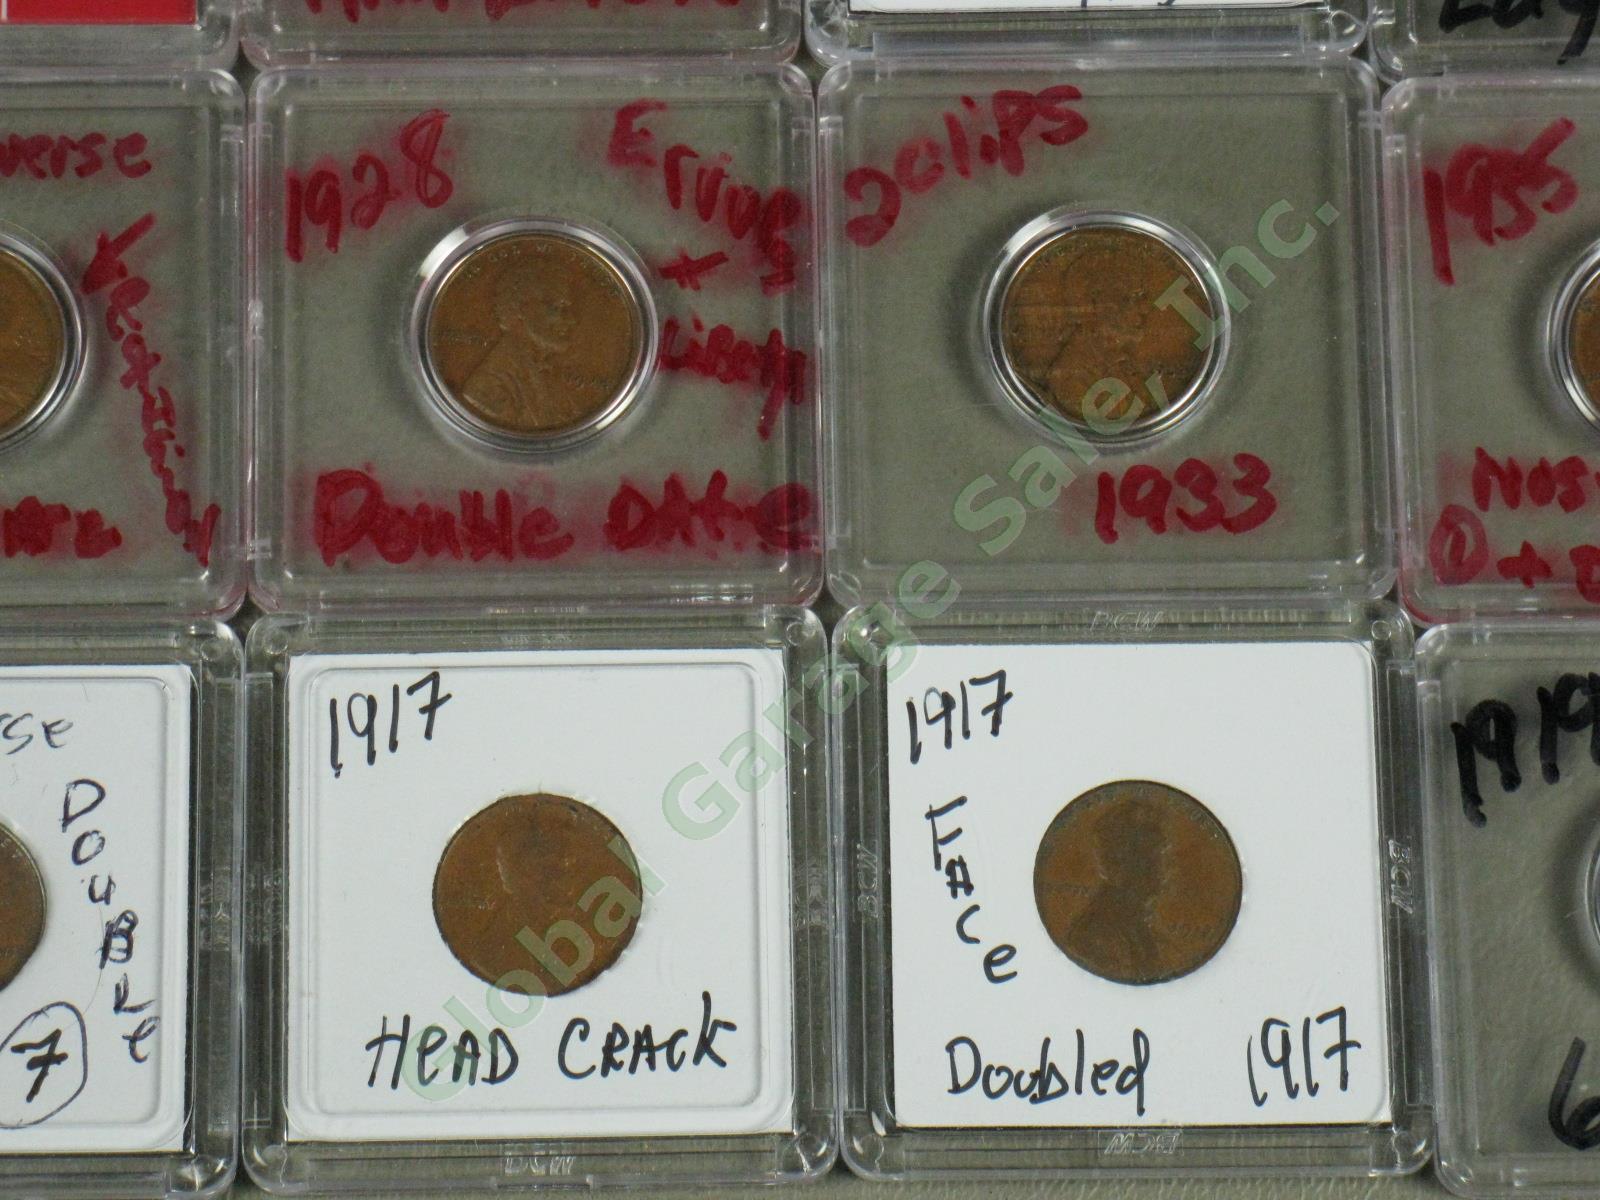 36 US Penny Mint Error Lot 12 UNC 1907 1917 1969-S ++ Doubles Die Cracks Wide AM 2